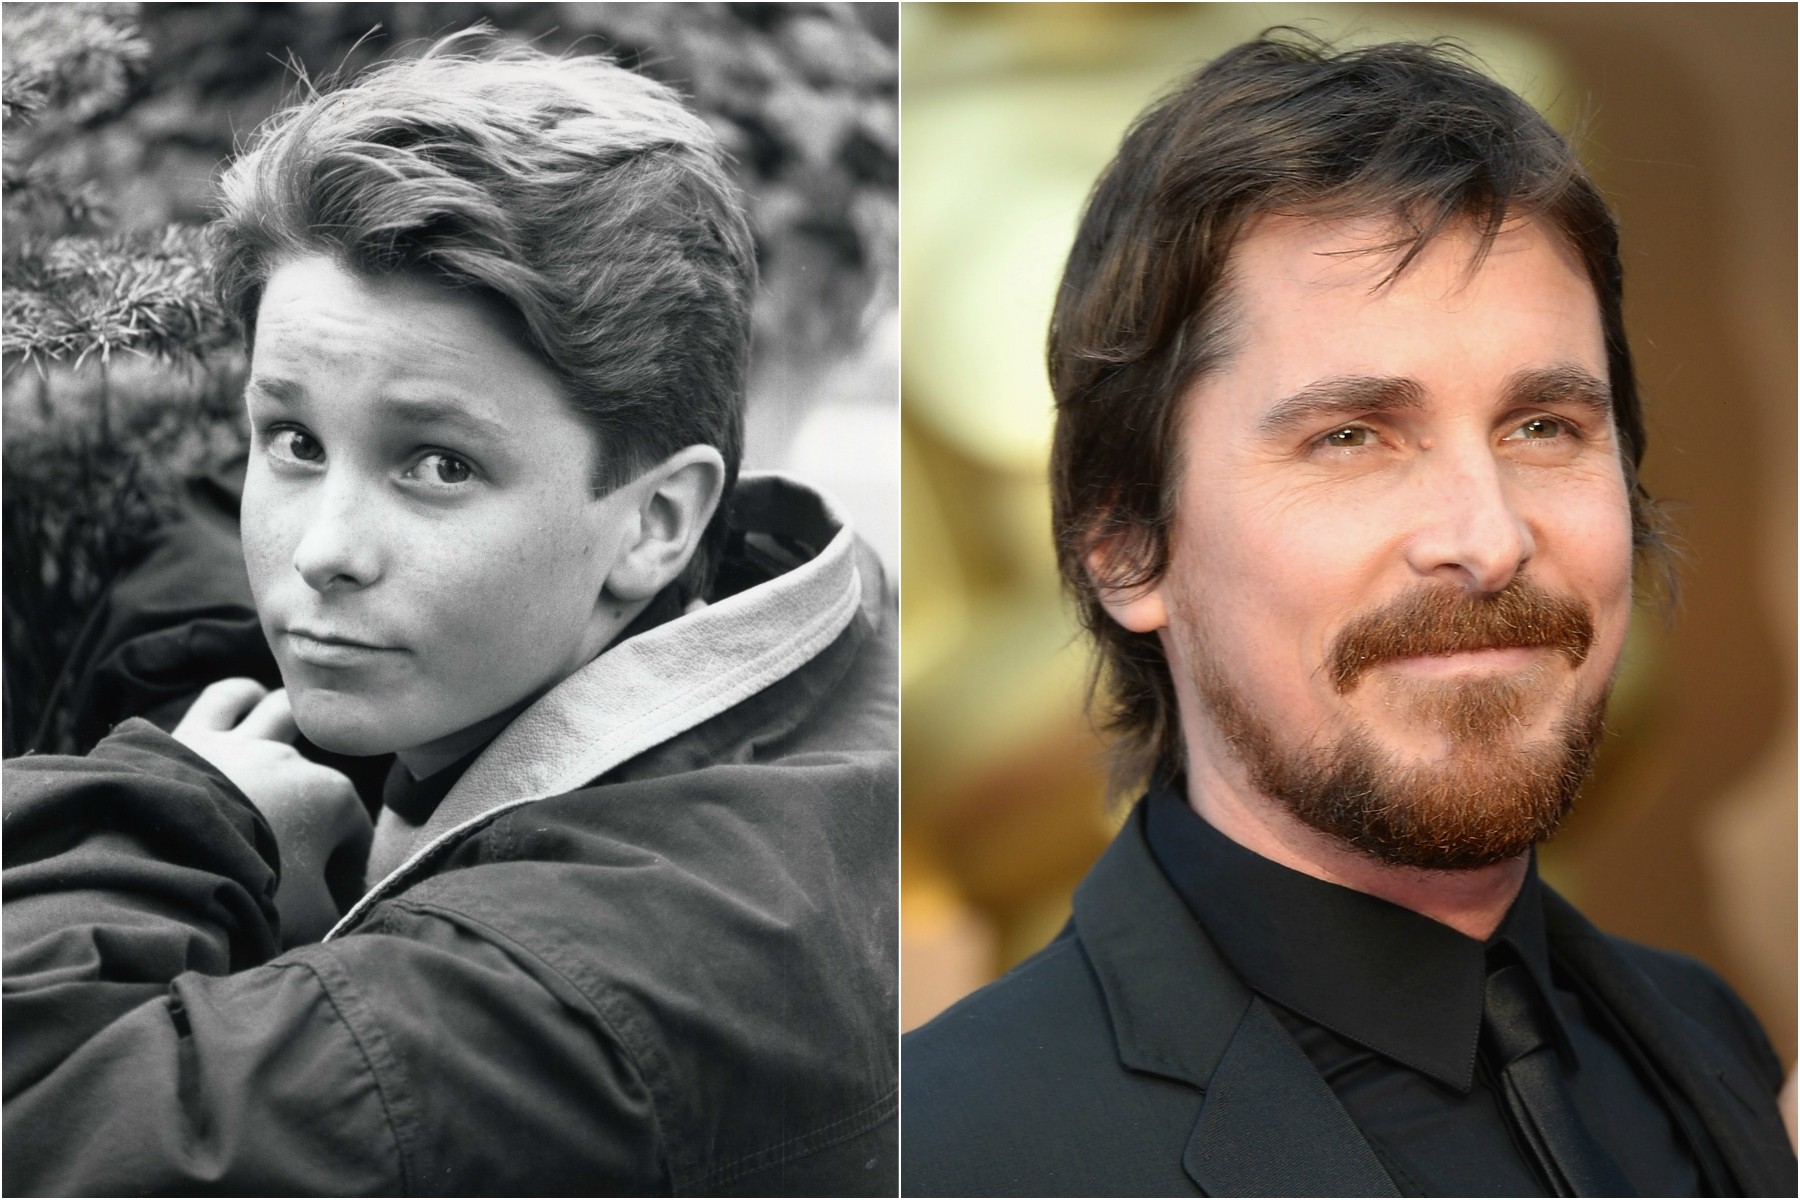 Christian Bale começou a trabalhar na televisão na década de 80, quando não tinha nem 13 anos. Atualmente tem 40. (Foto: Divulgação e Getty Images)